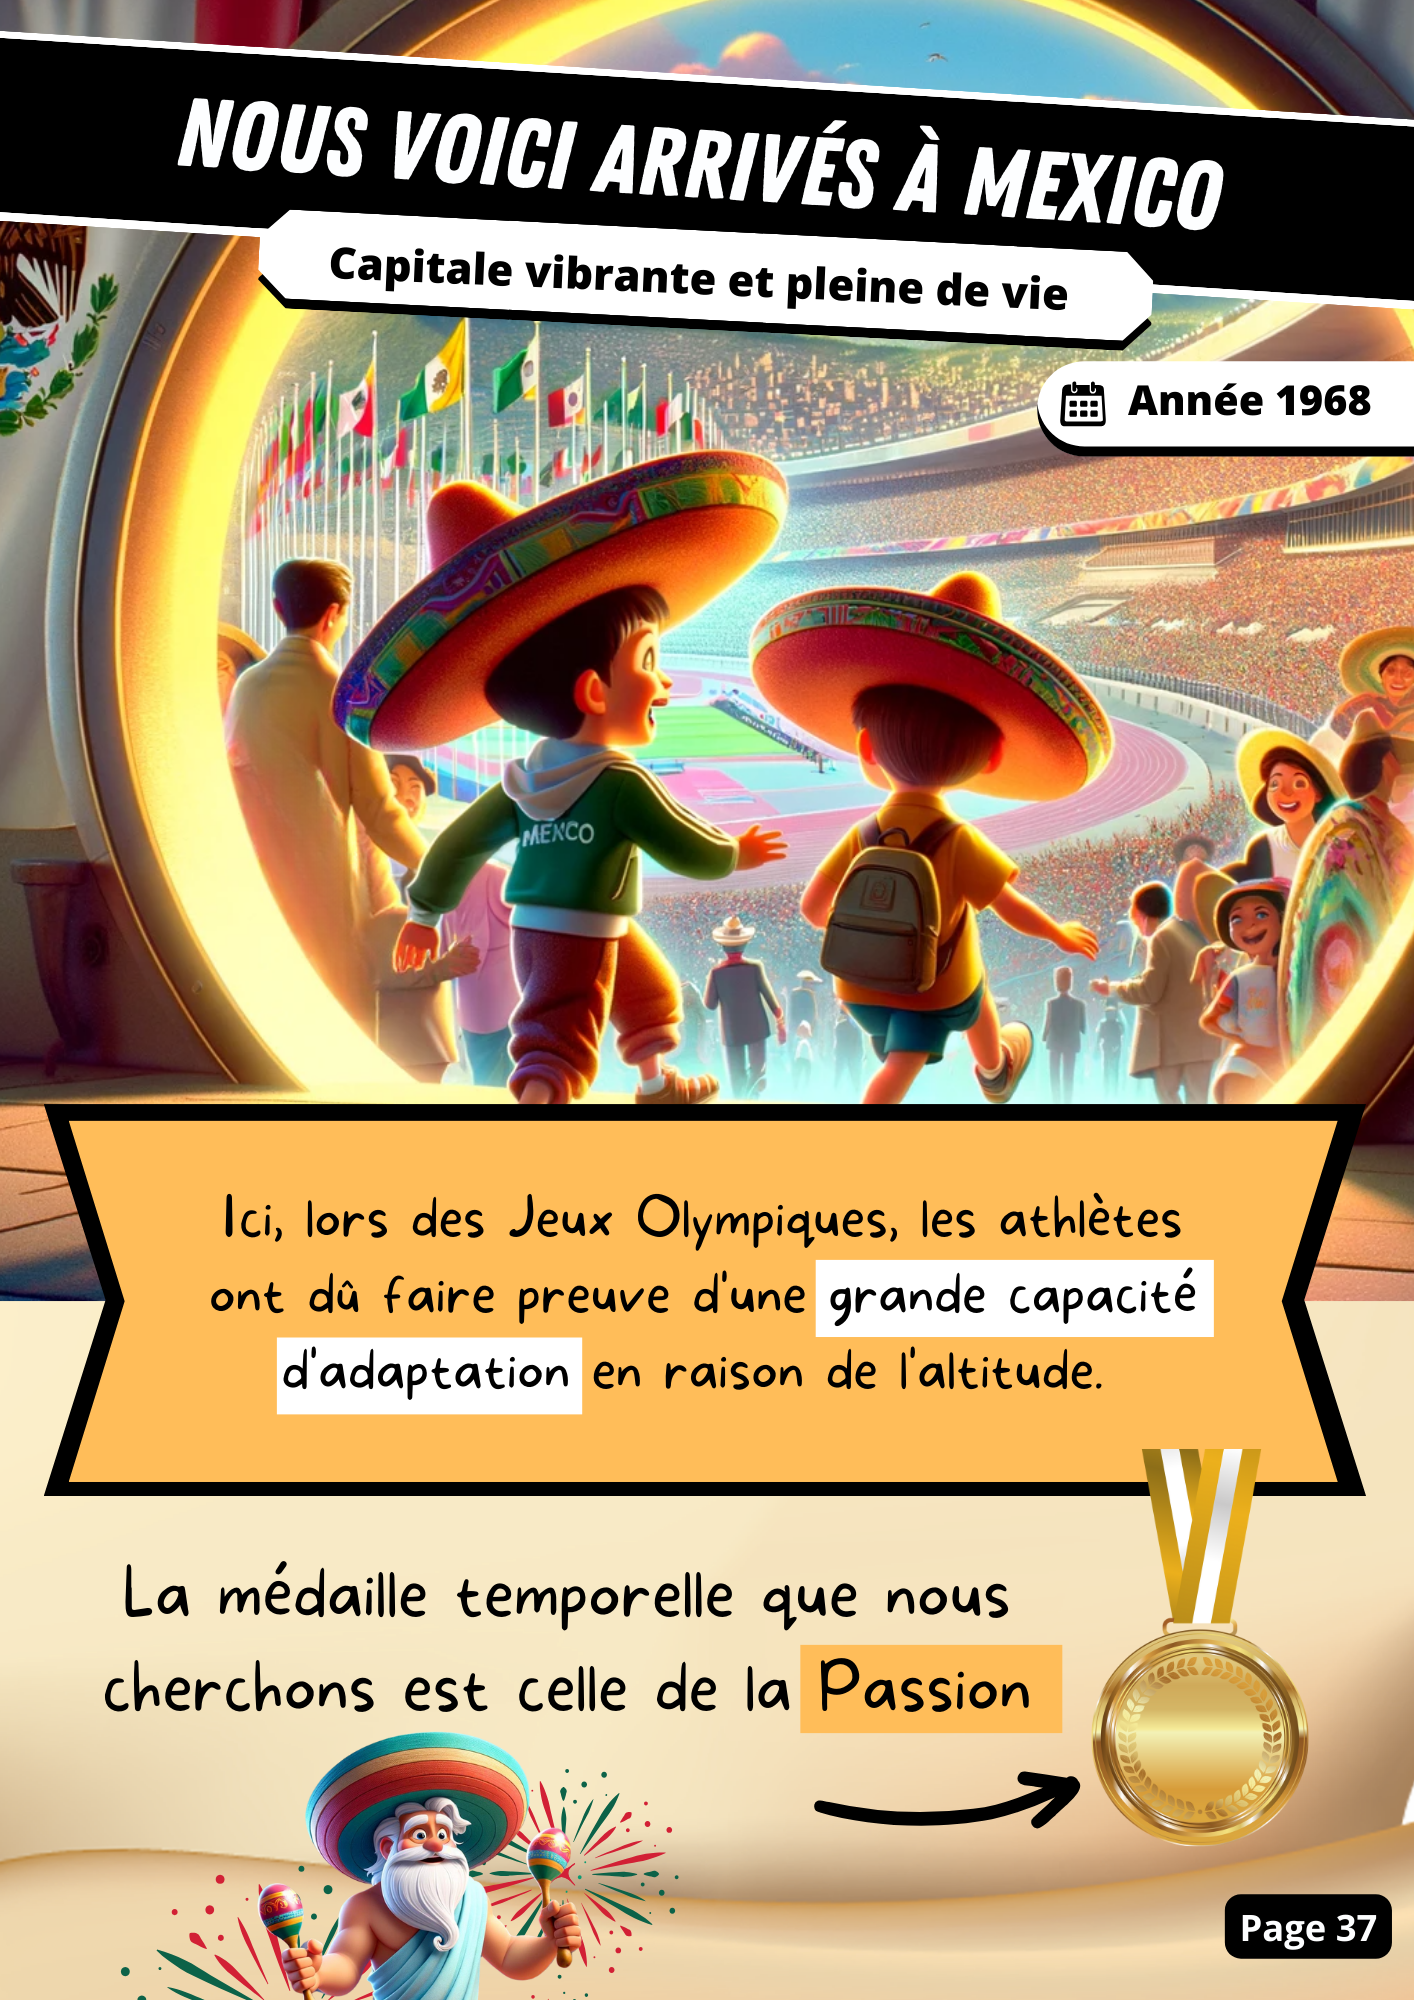 Jeux Sportifs : Les Jeux Olympiques à Travers le Temps